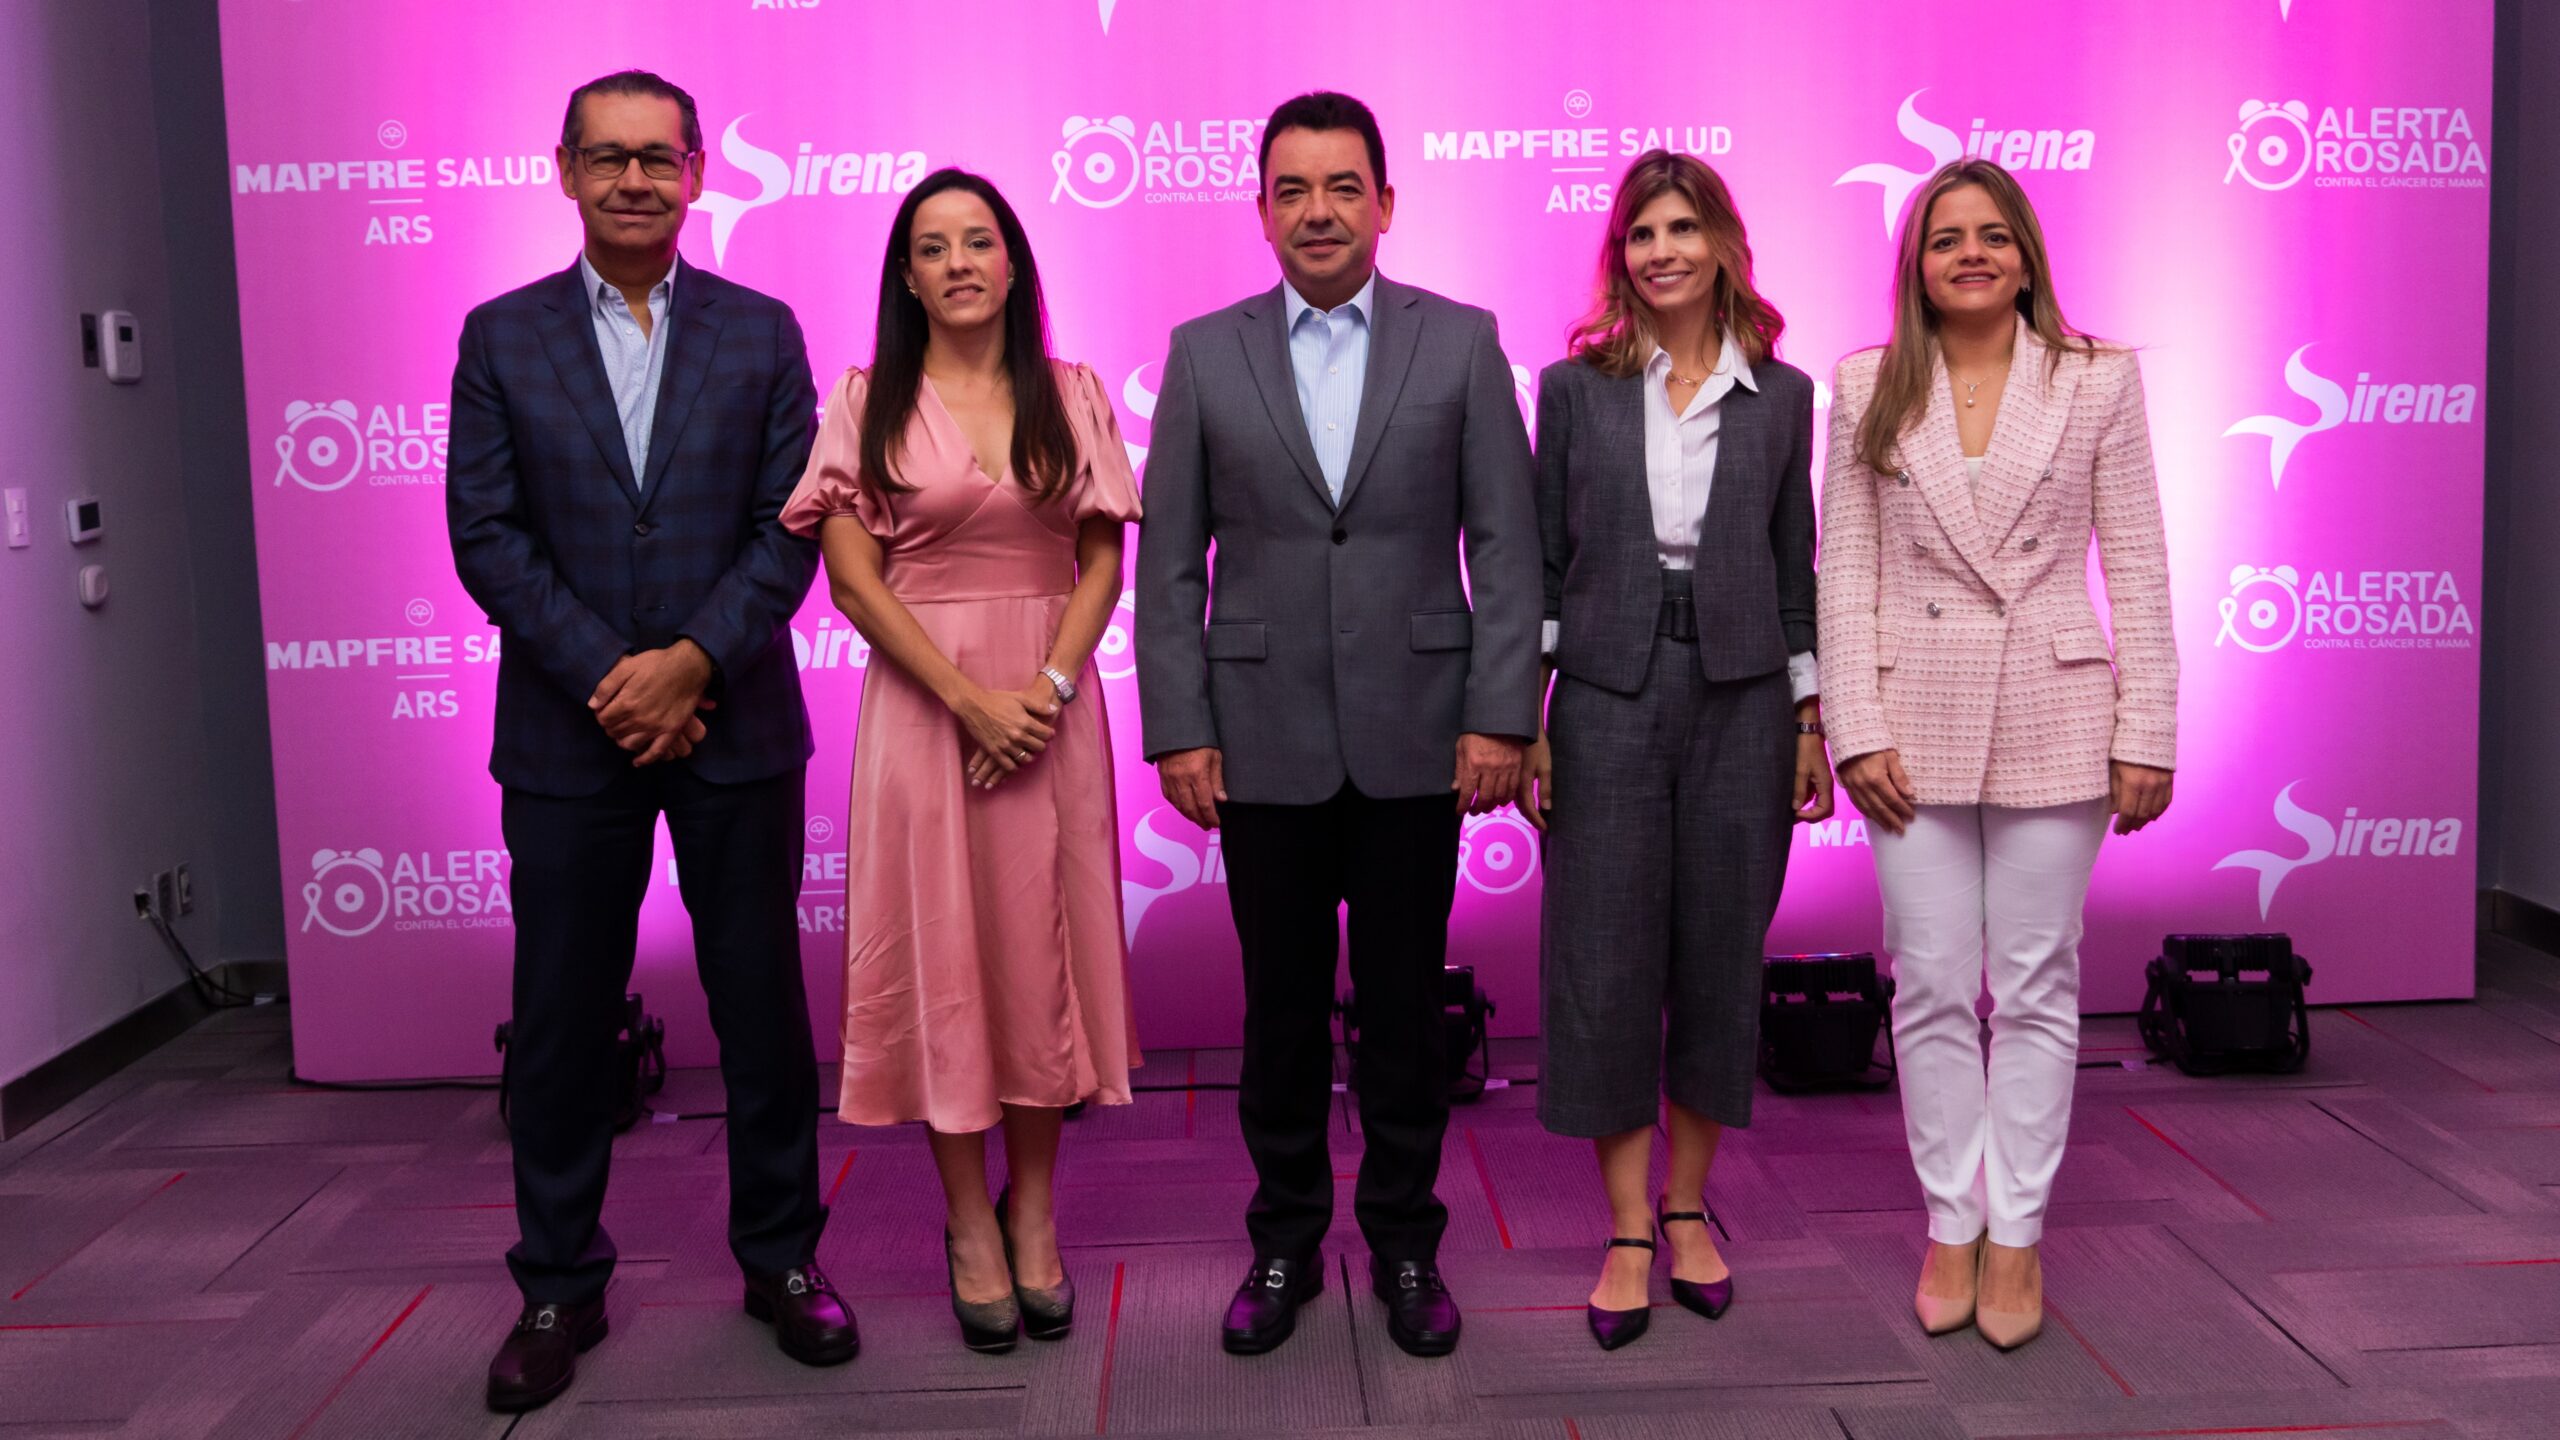 MAPFRE Salud ARS y Sirena anuncian jornadas prevención cáncer de mama